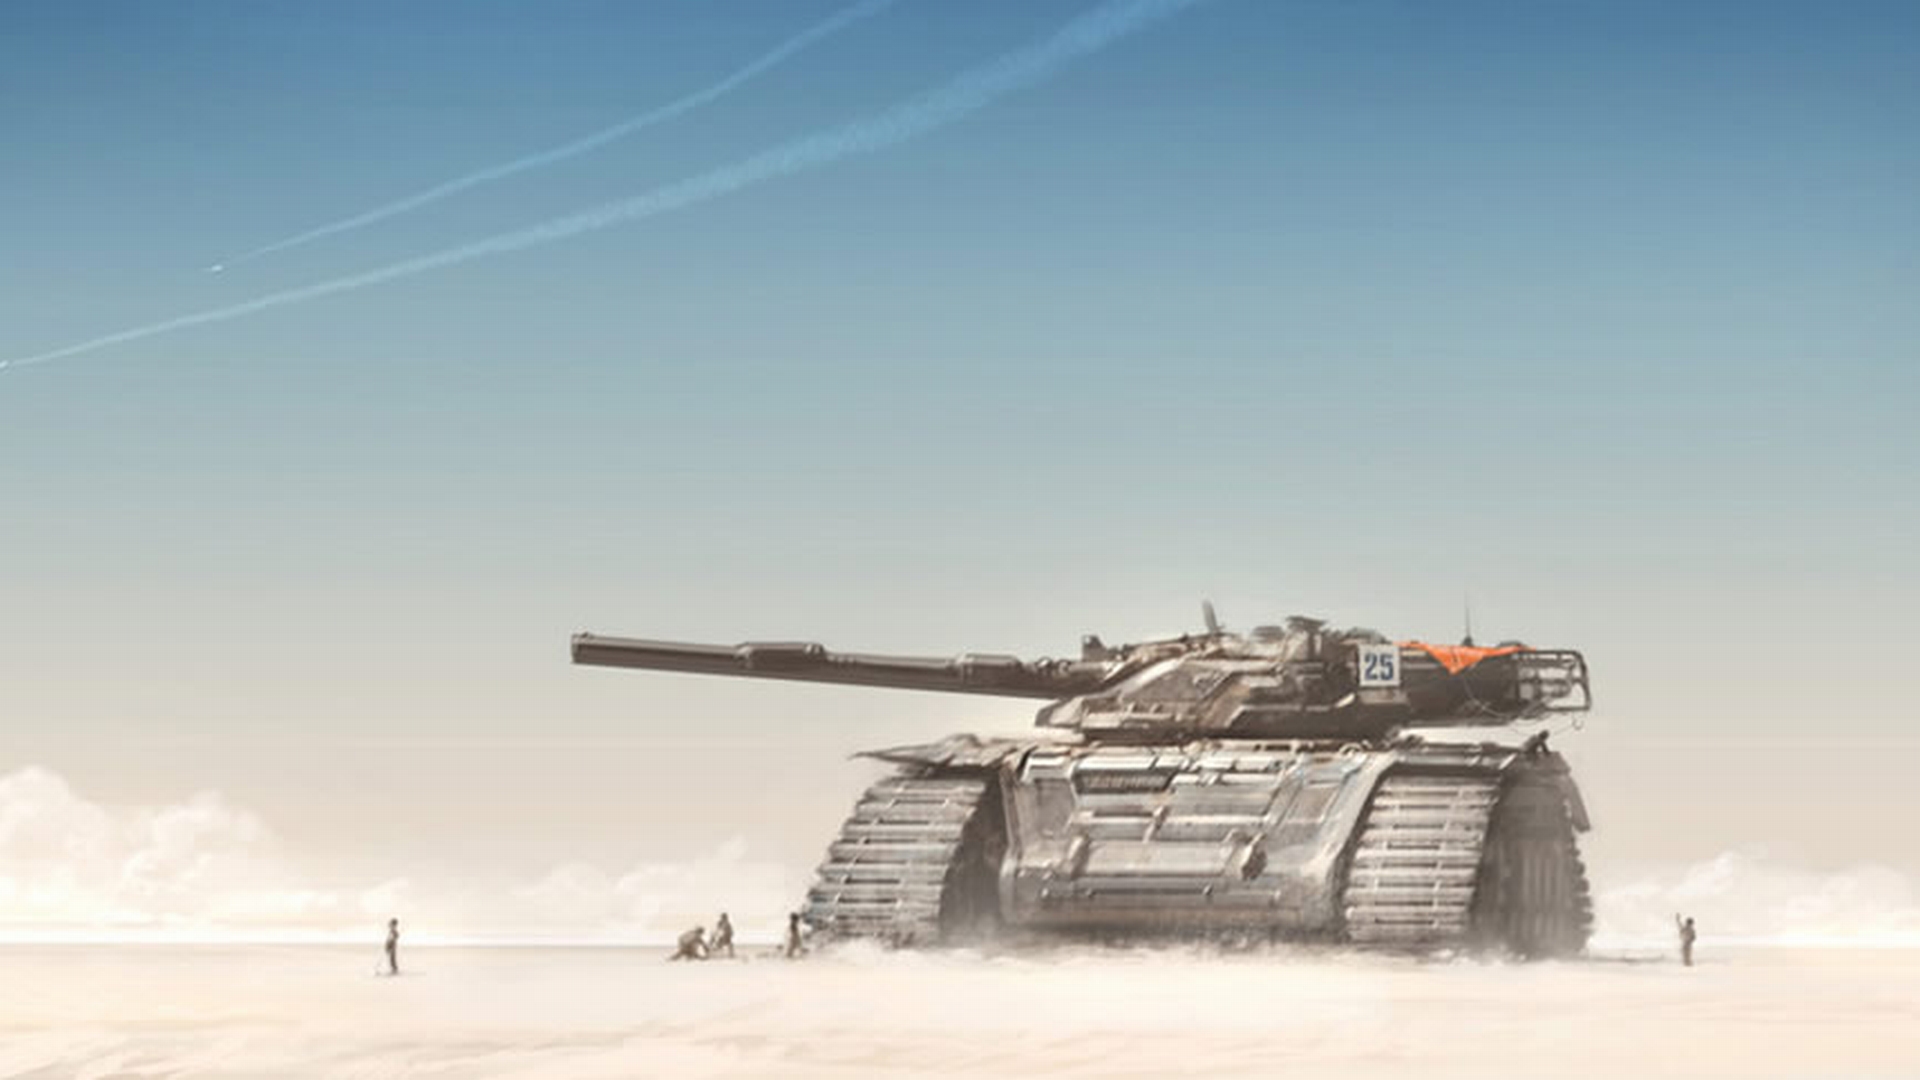 A striking sci-fi desktop wallpaper set in a vast desert, inspired by military aesthetics.